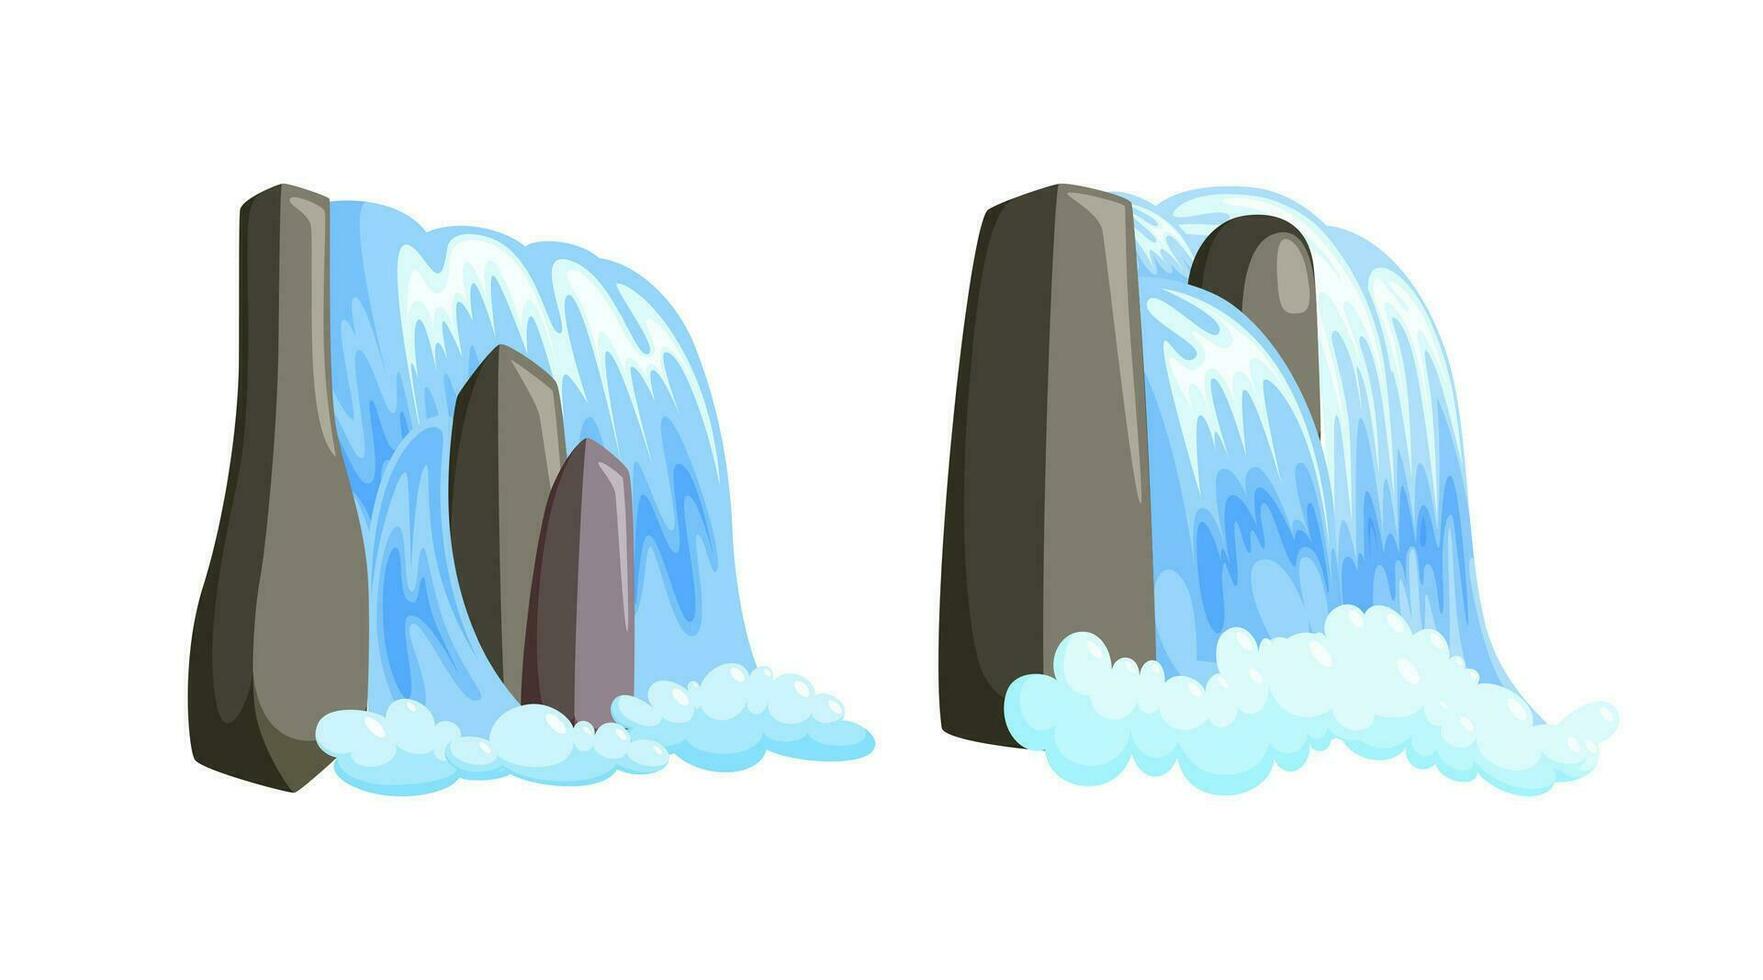 vattenfall kaskad strömning ner med skum. uppsättning av saga kaskad av blå vatten isolerat i vit bakgrund. vektor illustration